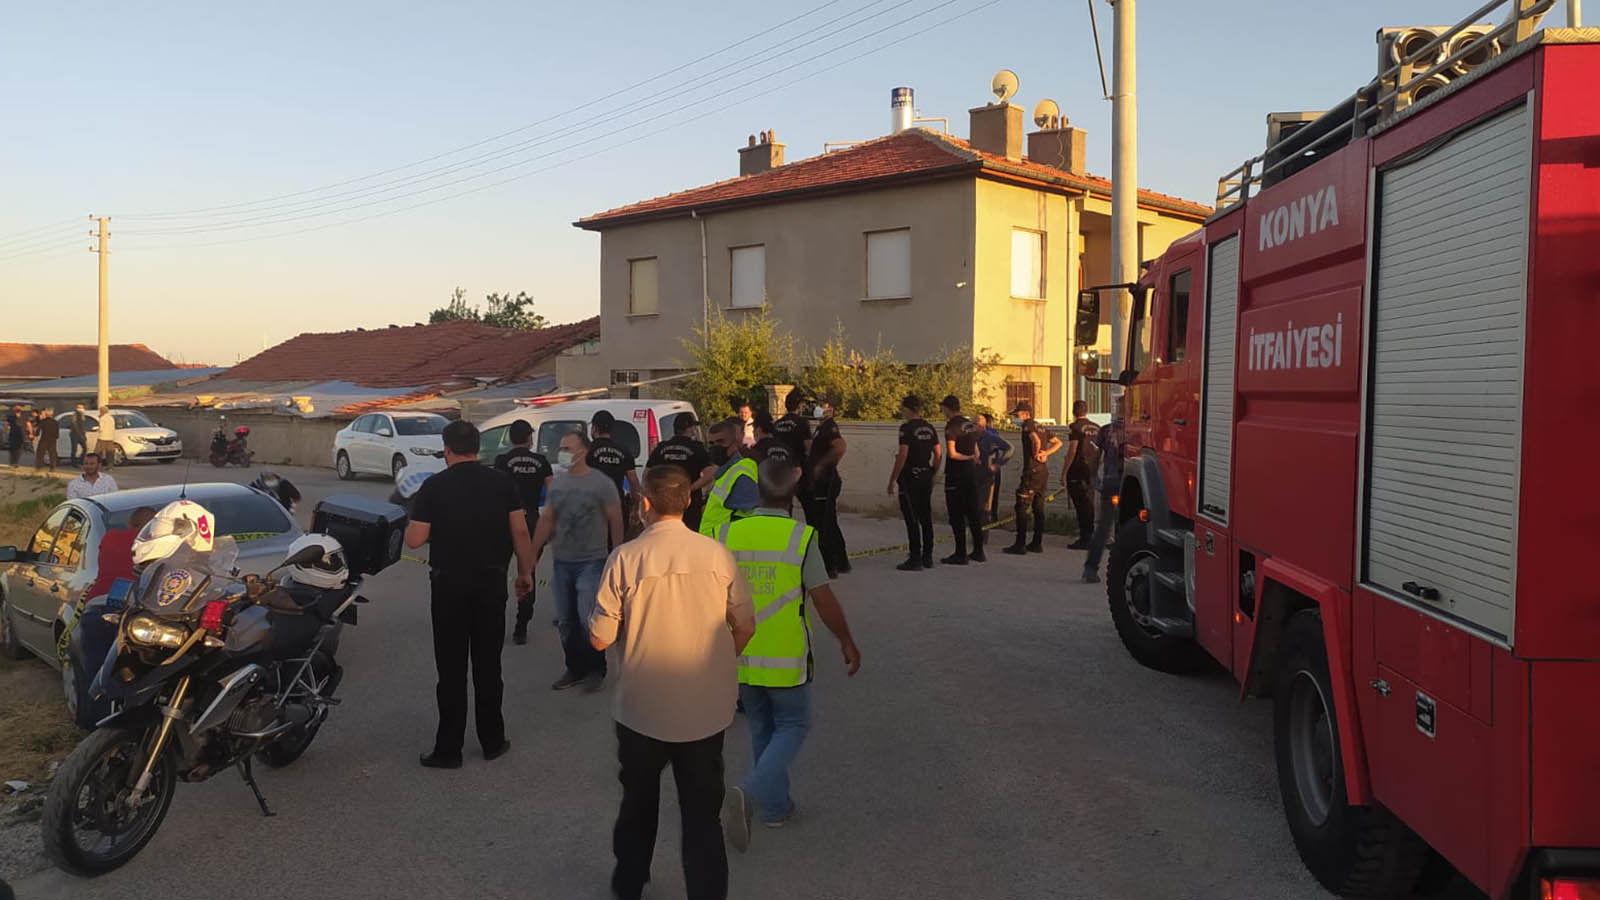 Թուրքական Քոնիայում քուրդ ընտանիքի սպանությունը վախի մթնոլորտ է առաջացրել տեղի քրդերի շրջանում